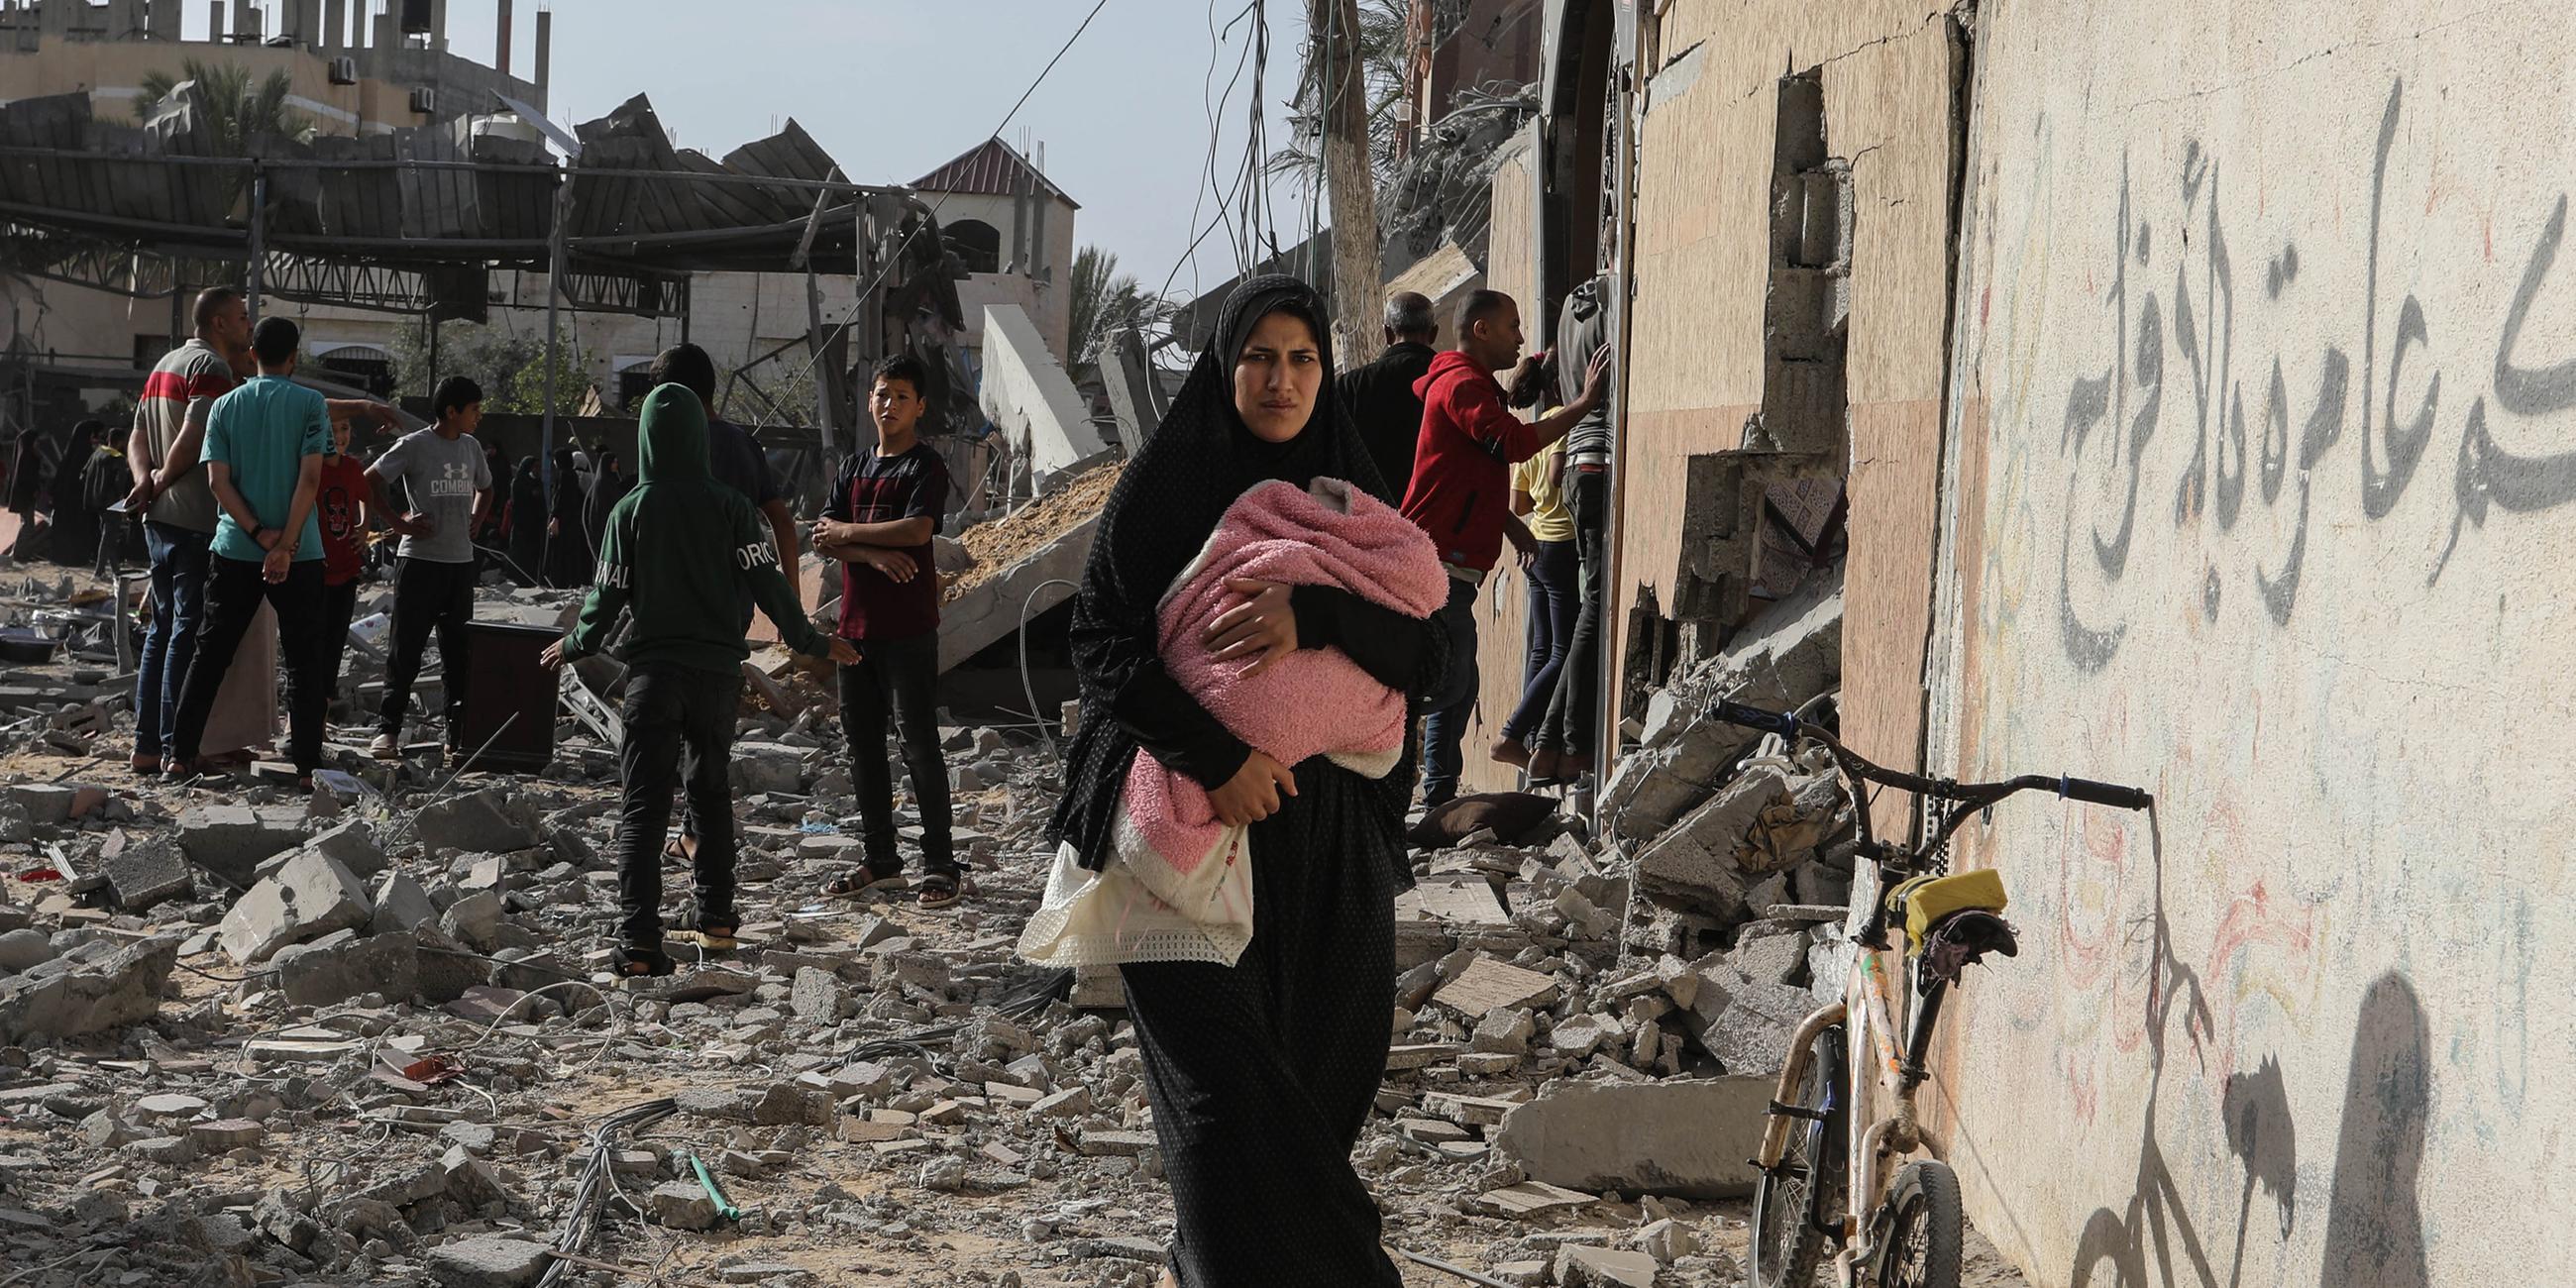 Palästinenser inspizieren beschädigte Häuser, nachdem israelische Kampfflugzeuge ein Haus bombardiert hatten.